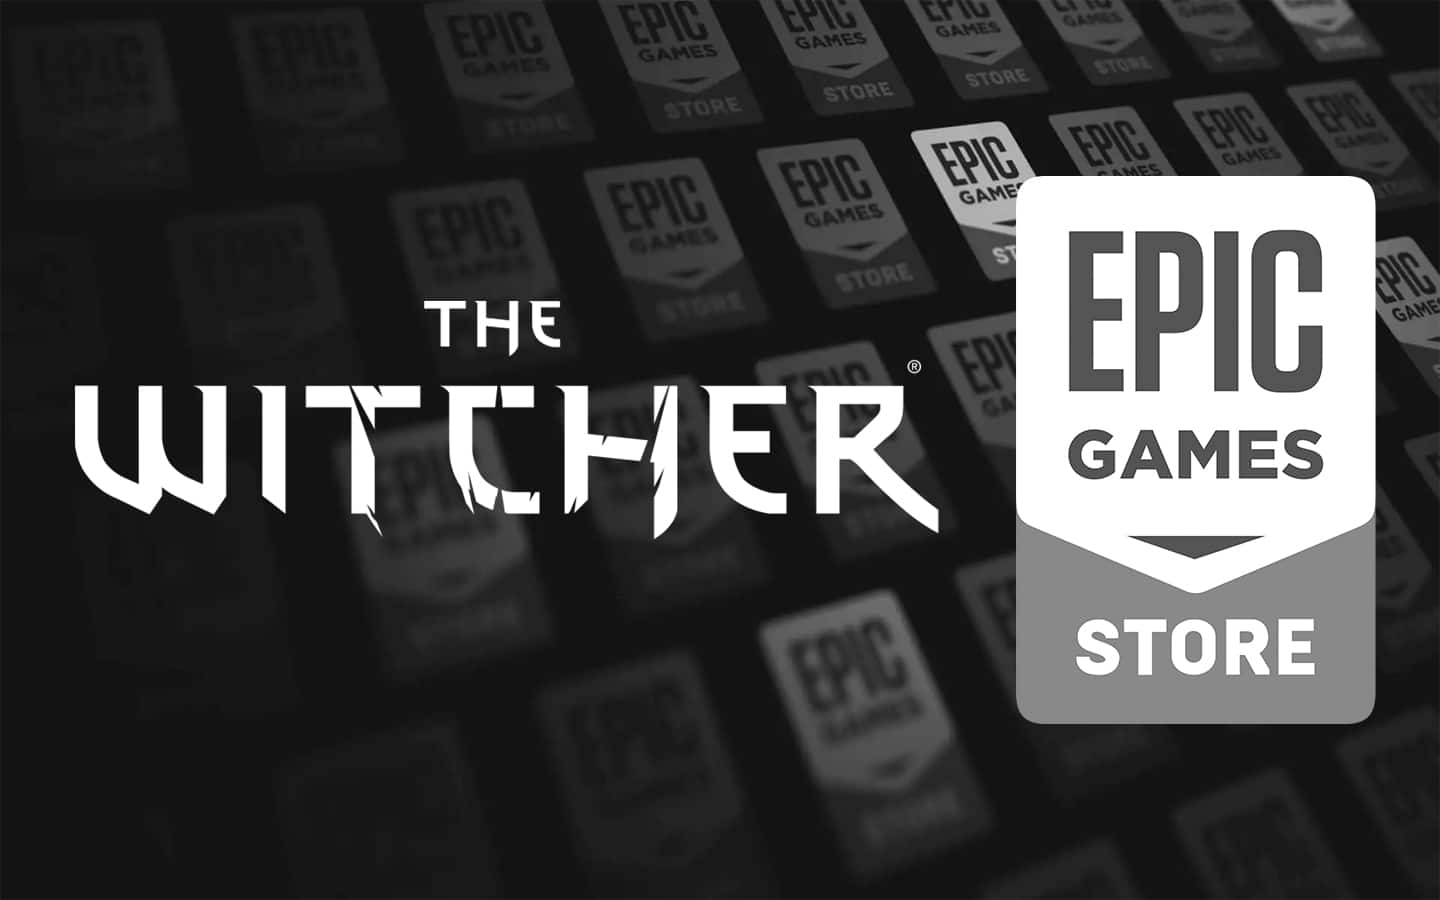 El próximo juego de The Witcher no será exclusivo de la Epic Games Store